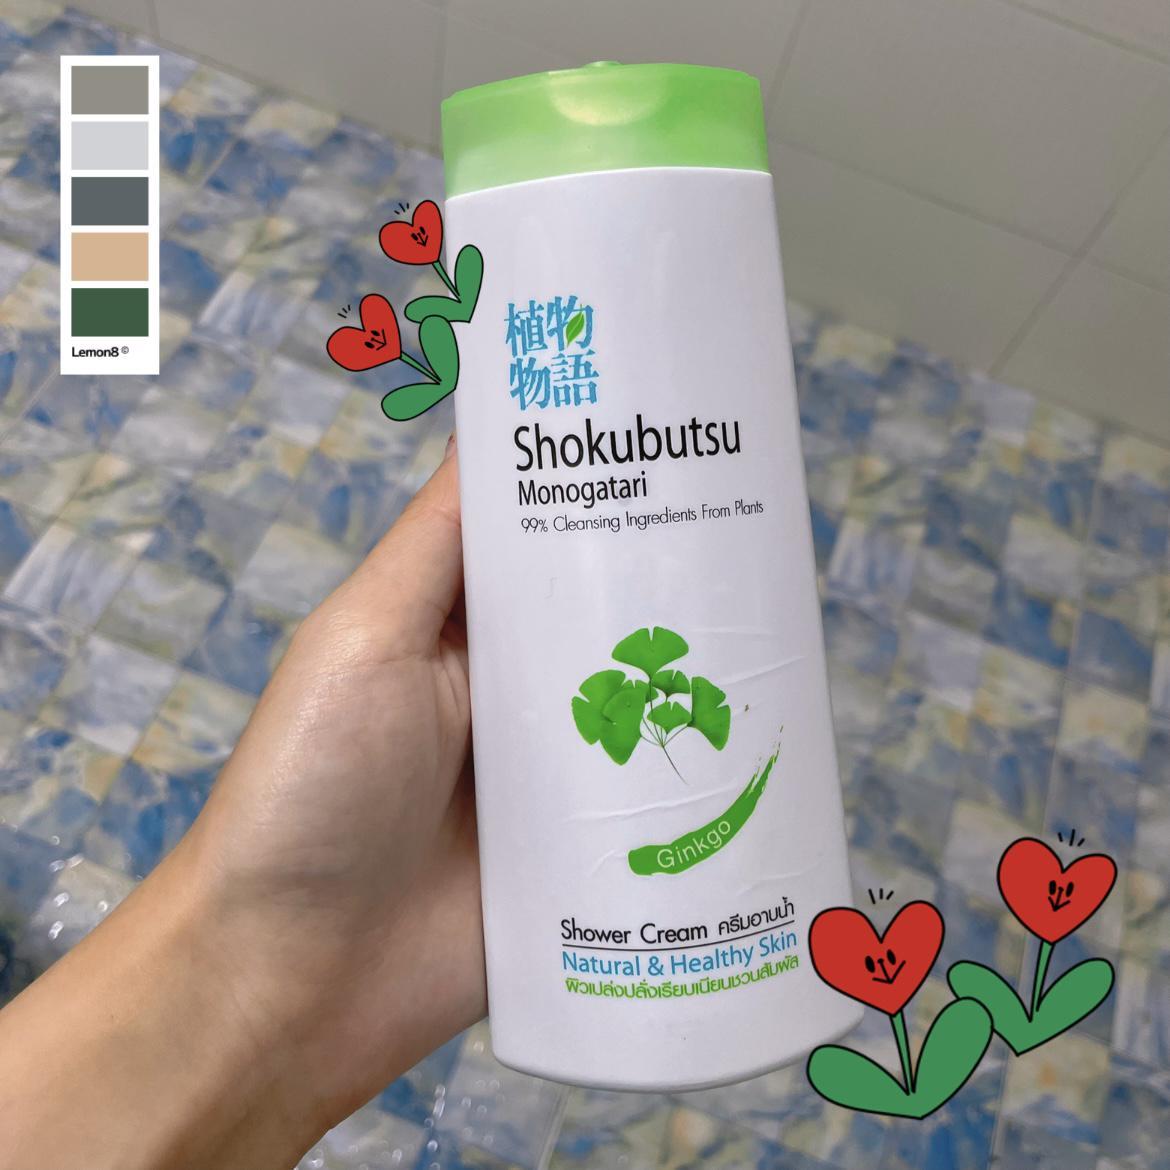 ภาพหน้าปก ผิวชุ่มชื้นสะอาดใสจากใบแปะก๊วย ต้องนี่สิ SHOKUBUTSU MONOGATARI Ginkgo Shower Cream ที่:0